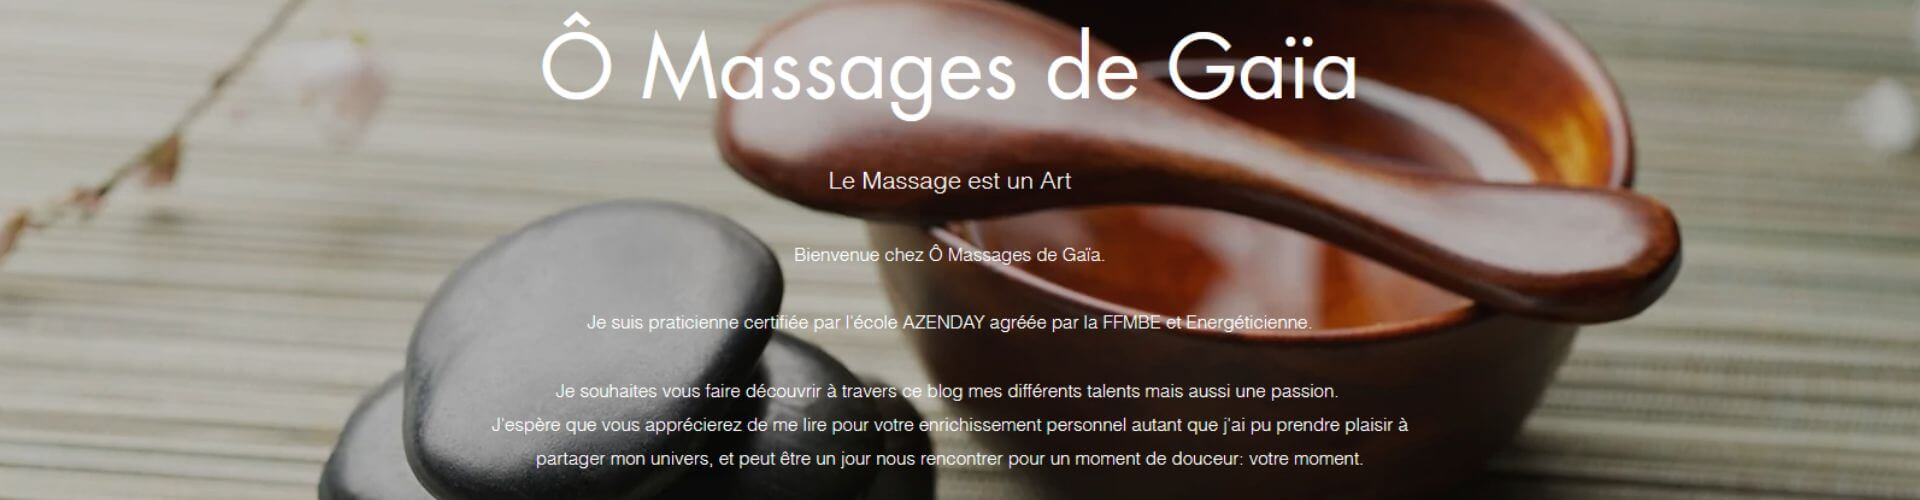 O Massages de Gaïa à Canet en Coeur d'Hérault